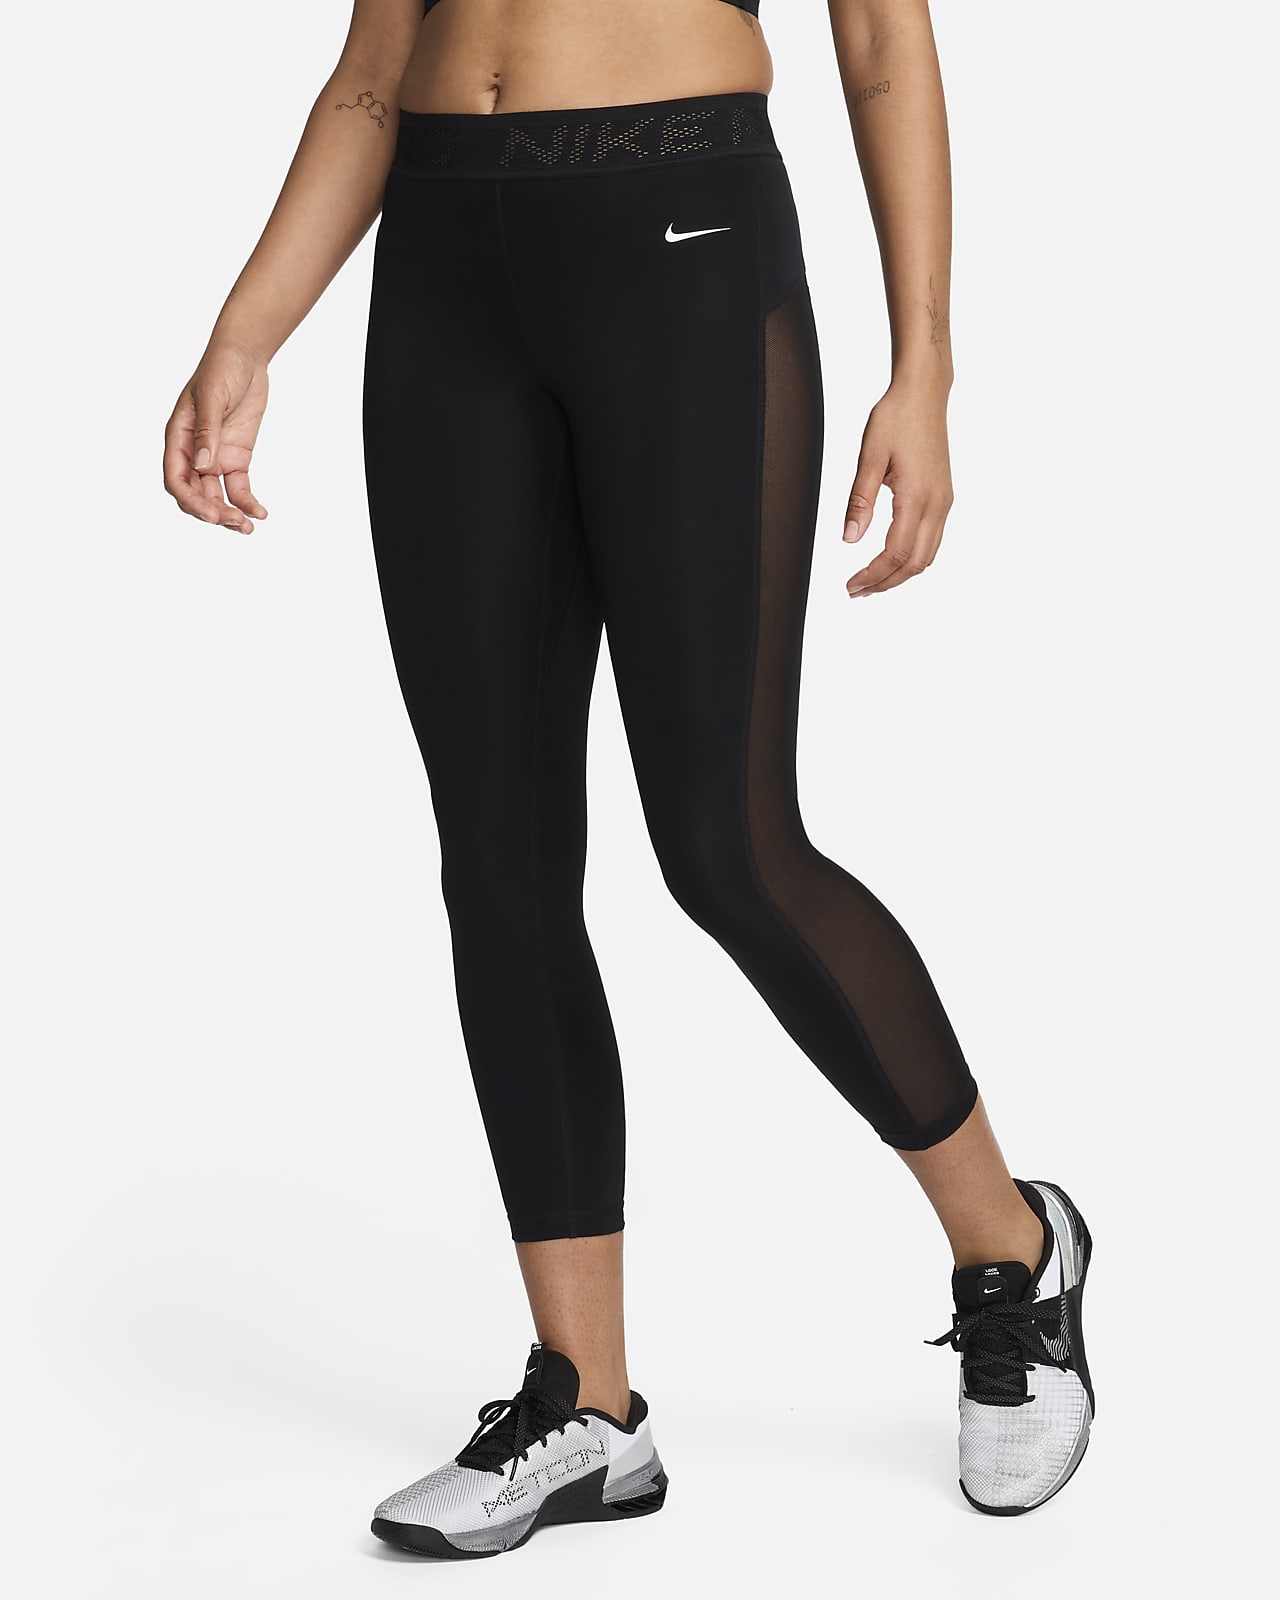 Legging 7/8 taille mi-haute à empiècements en mesh Nike Pro pour Femme